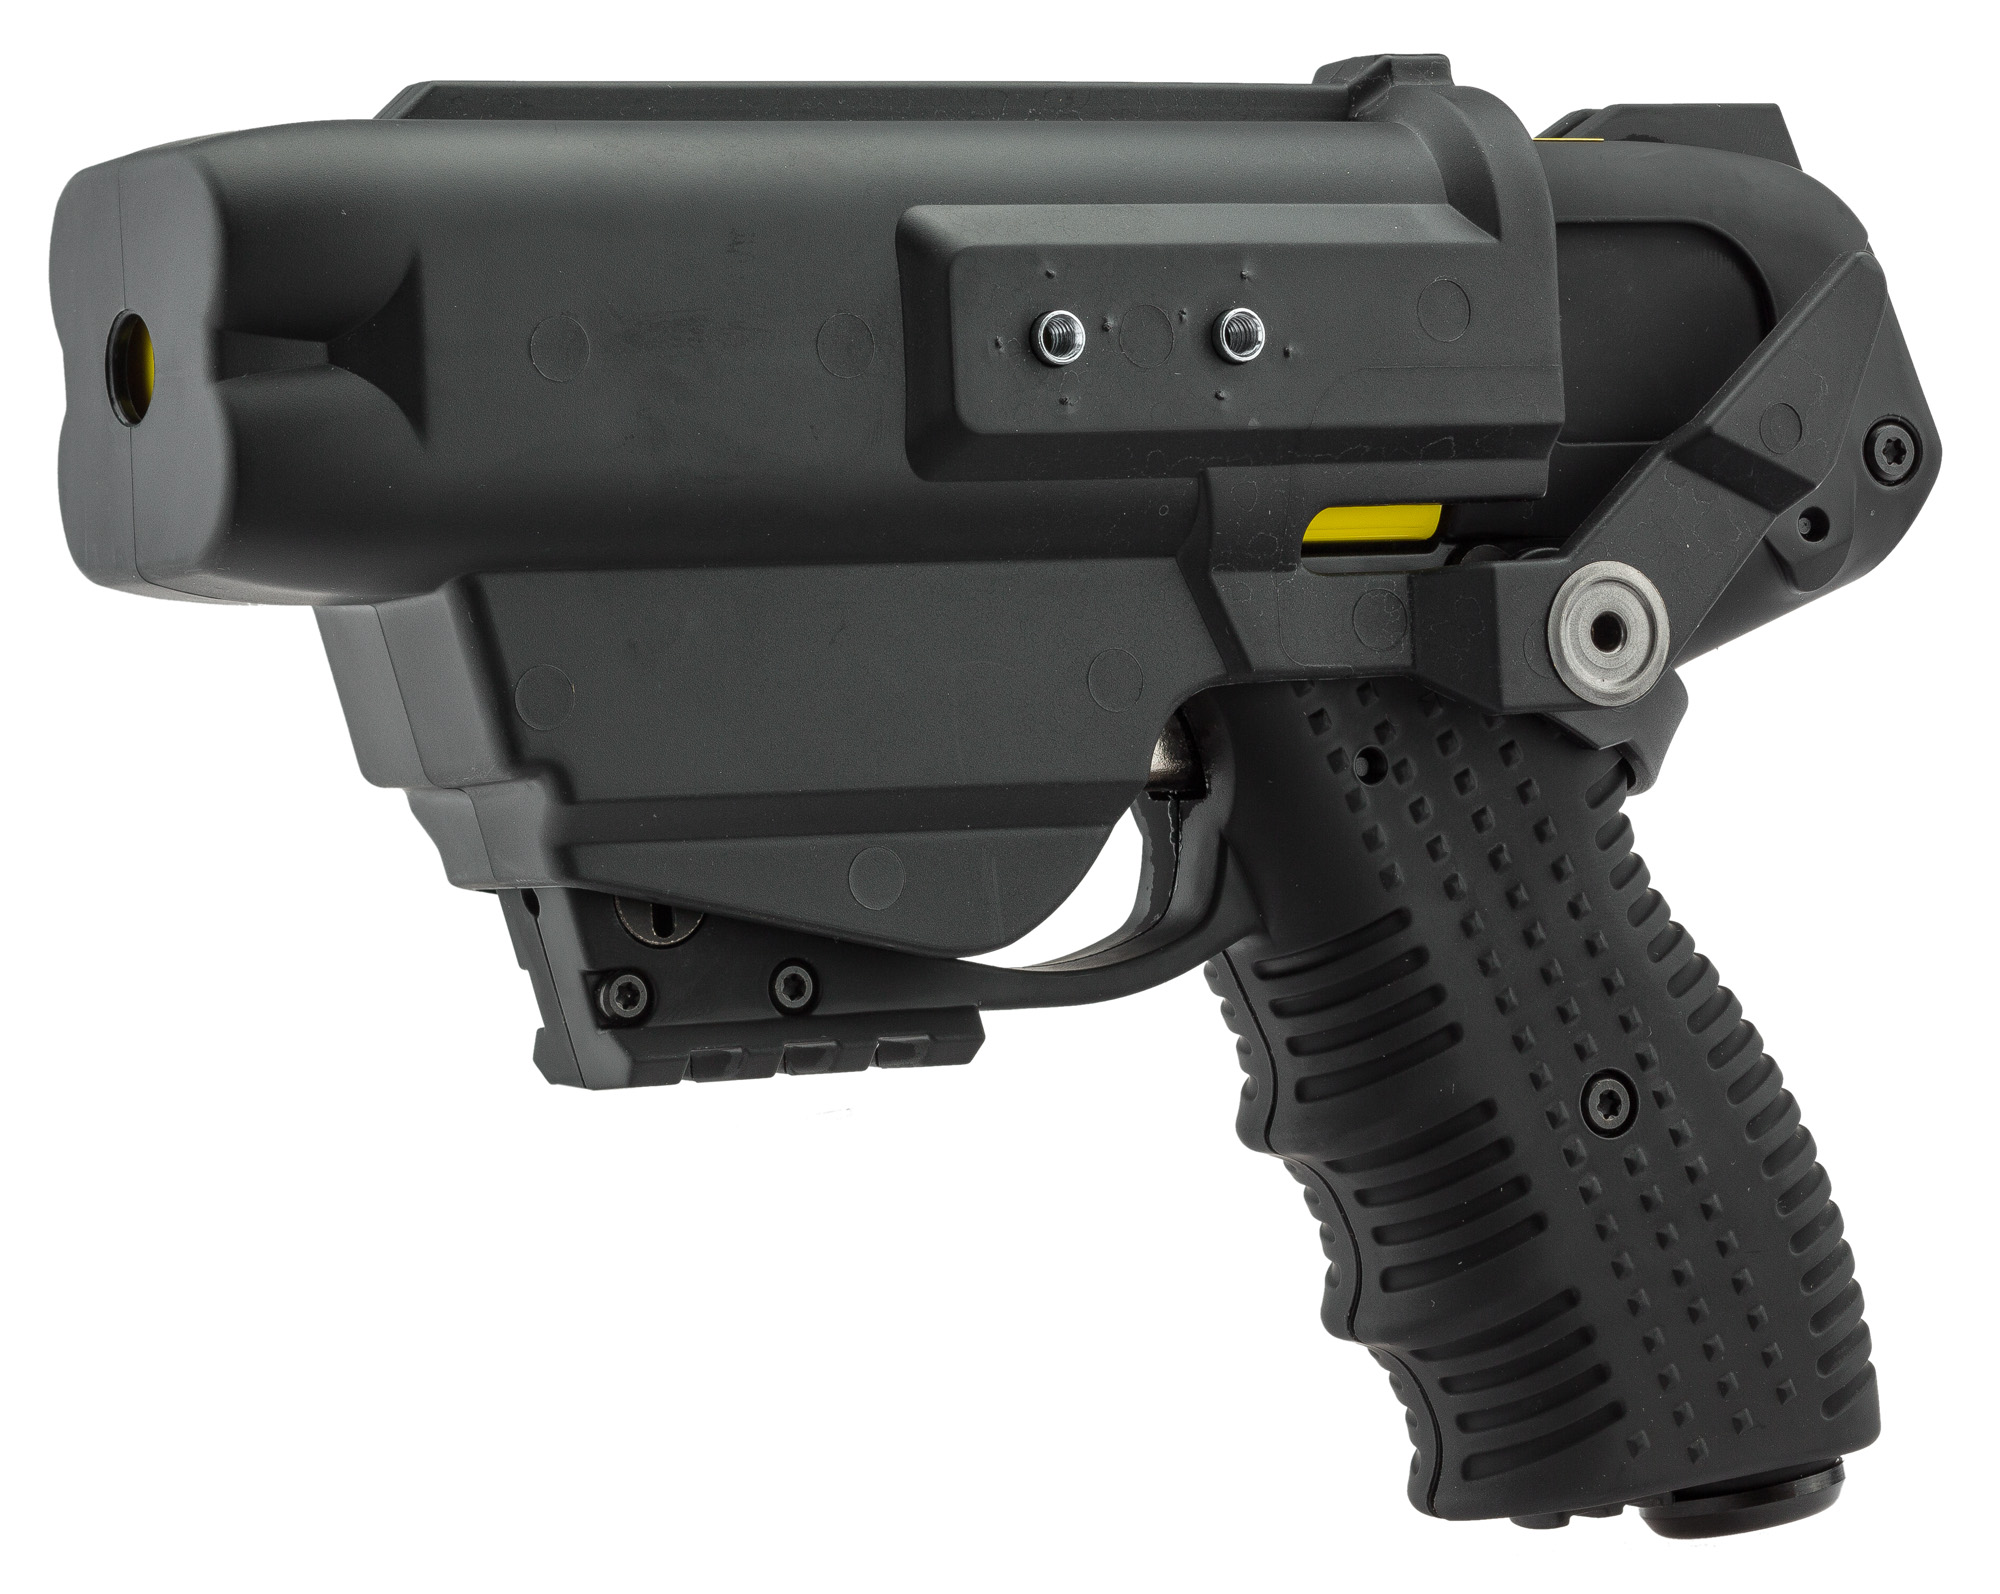 JPX6 nouvelle génération 4 coups Compact avec laser - Armes de